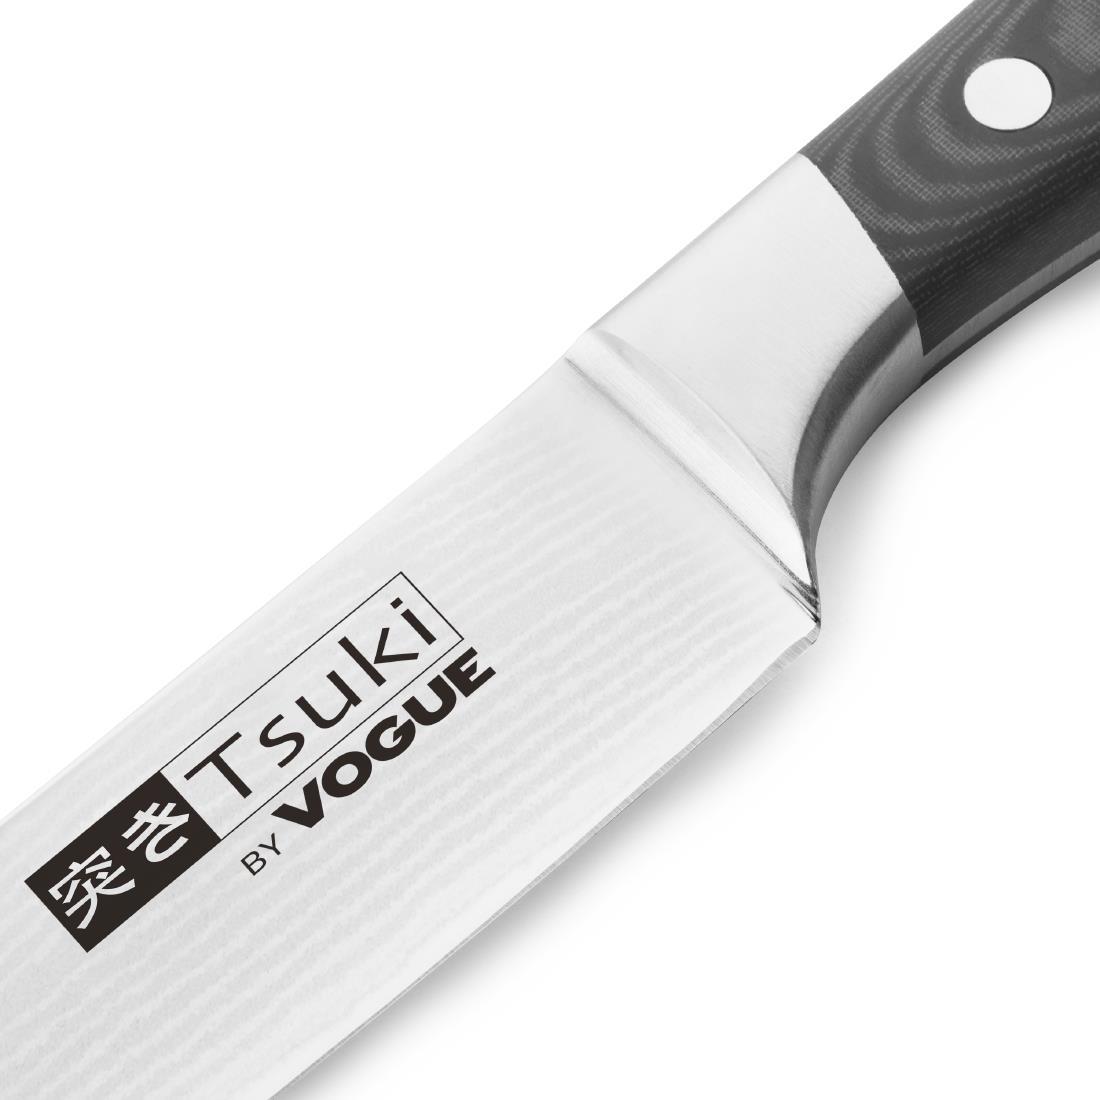 Vogue Tsuki Series 7 Carving Knife 20.5cm - CF843  - 3